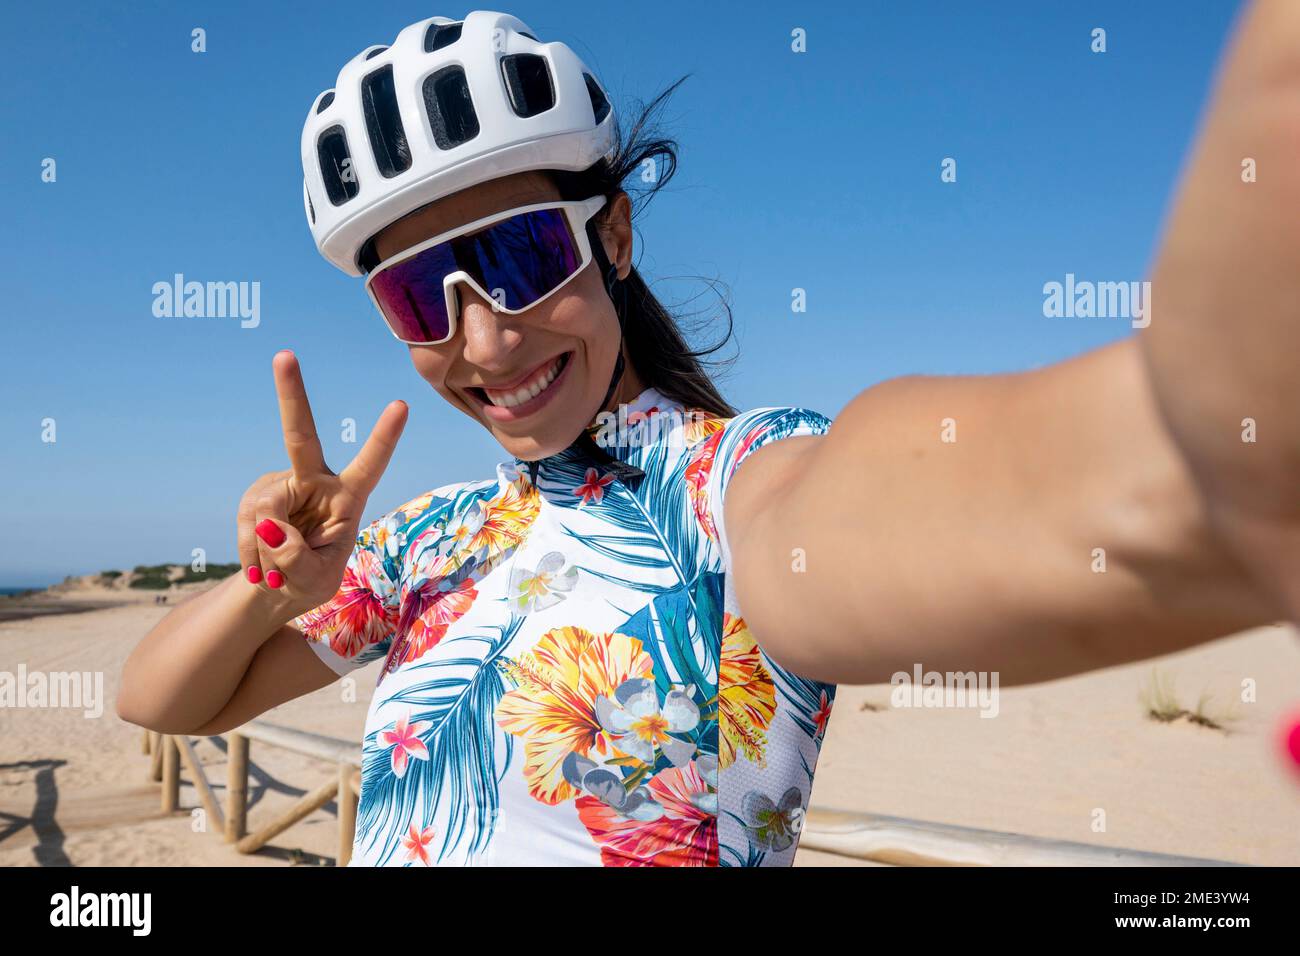 Glücklicher Radfahrer im Helm, der eine friedliche Geste zeigt und Selfie macht Stockfoto